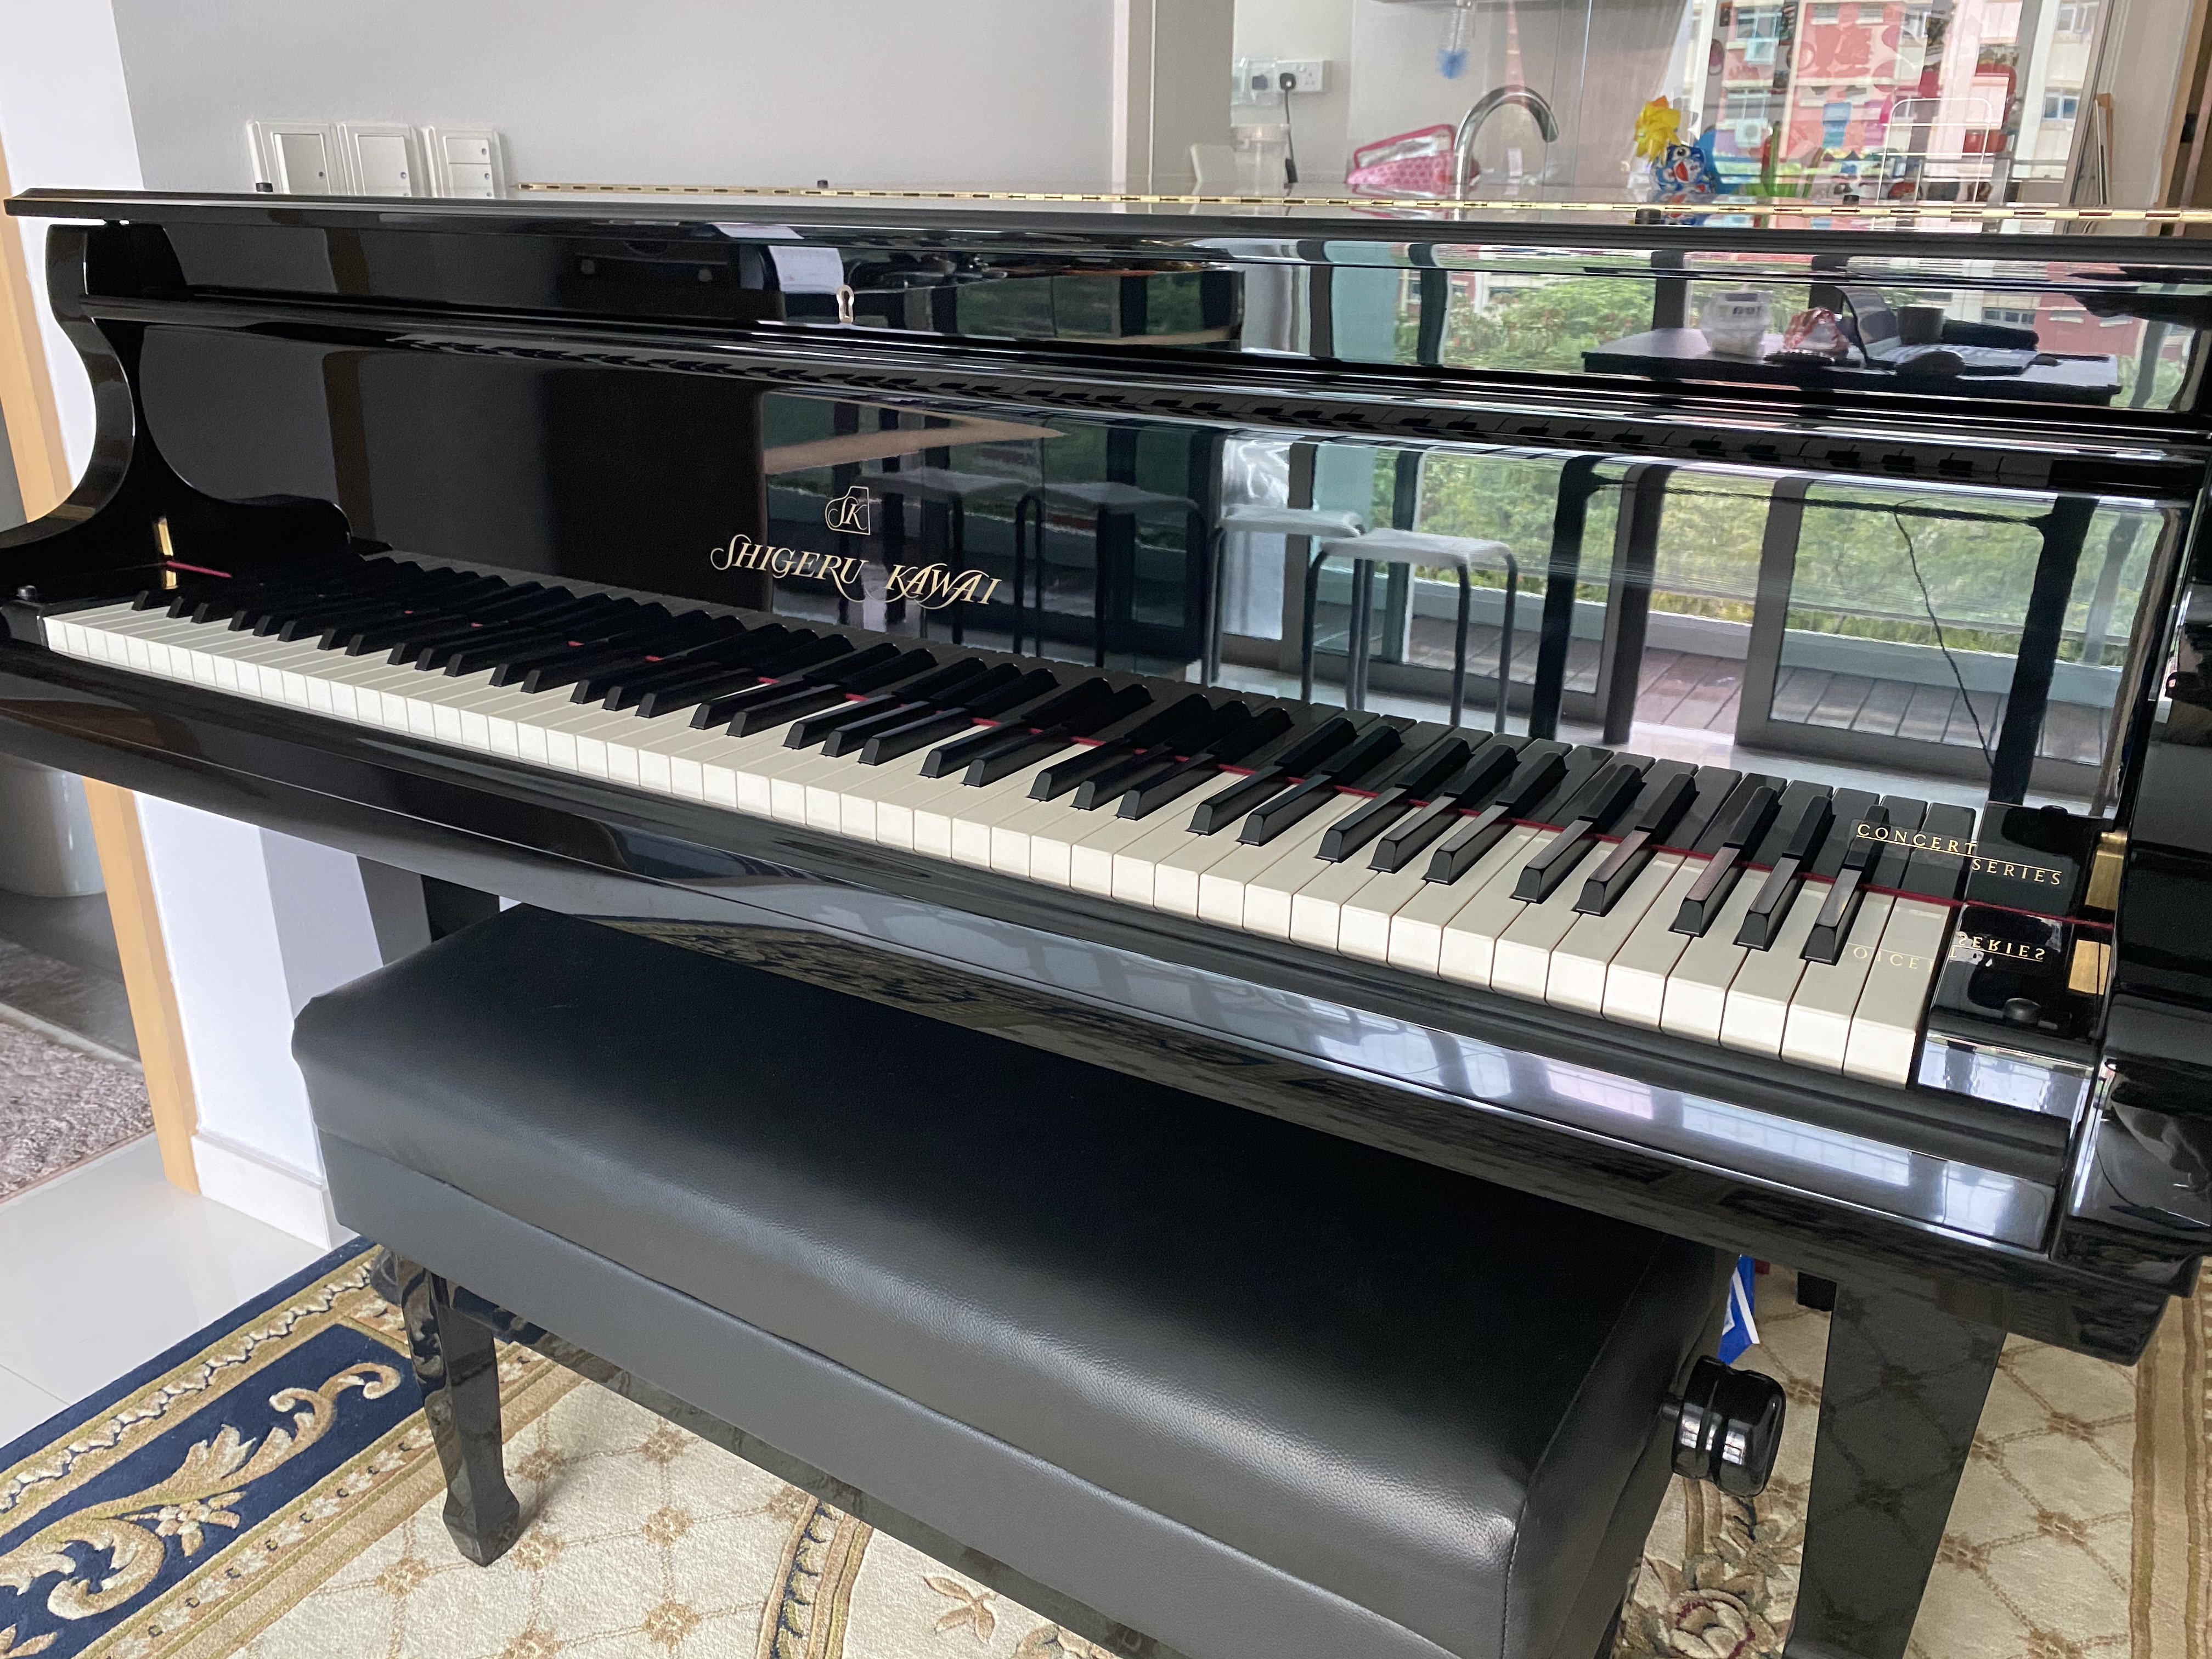 Shigeru Kawai SK-3 Grand Piano